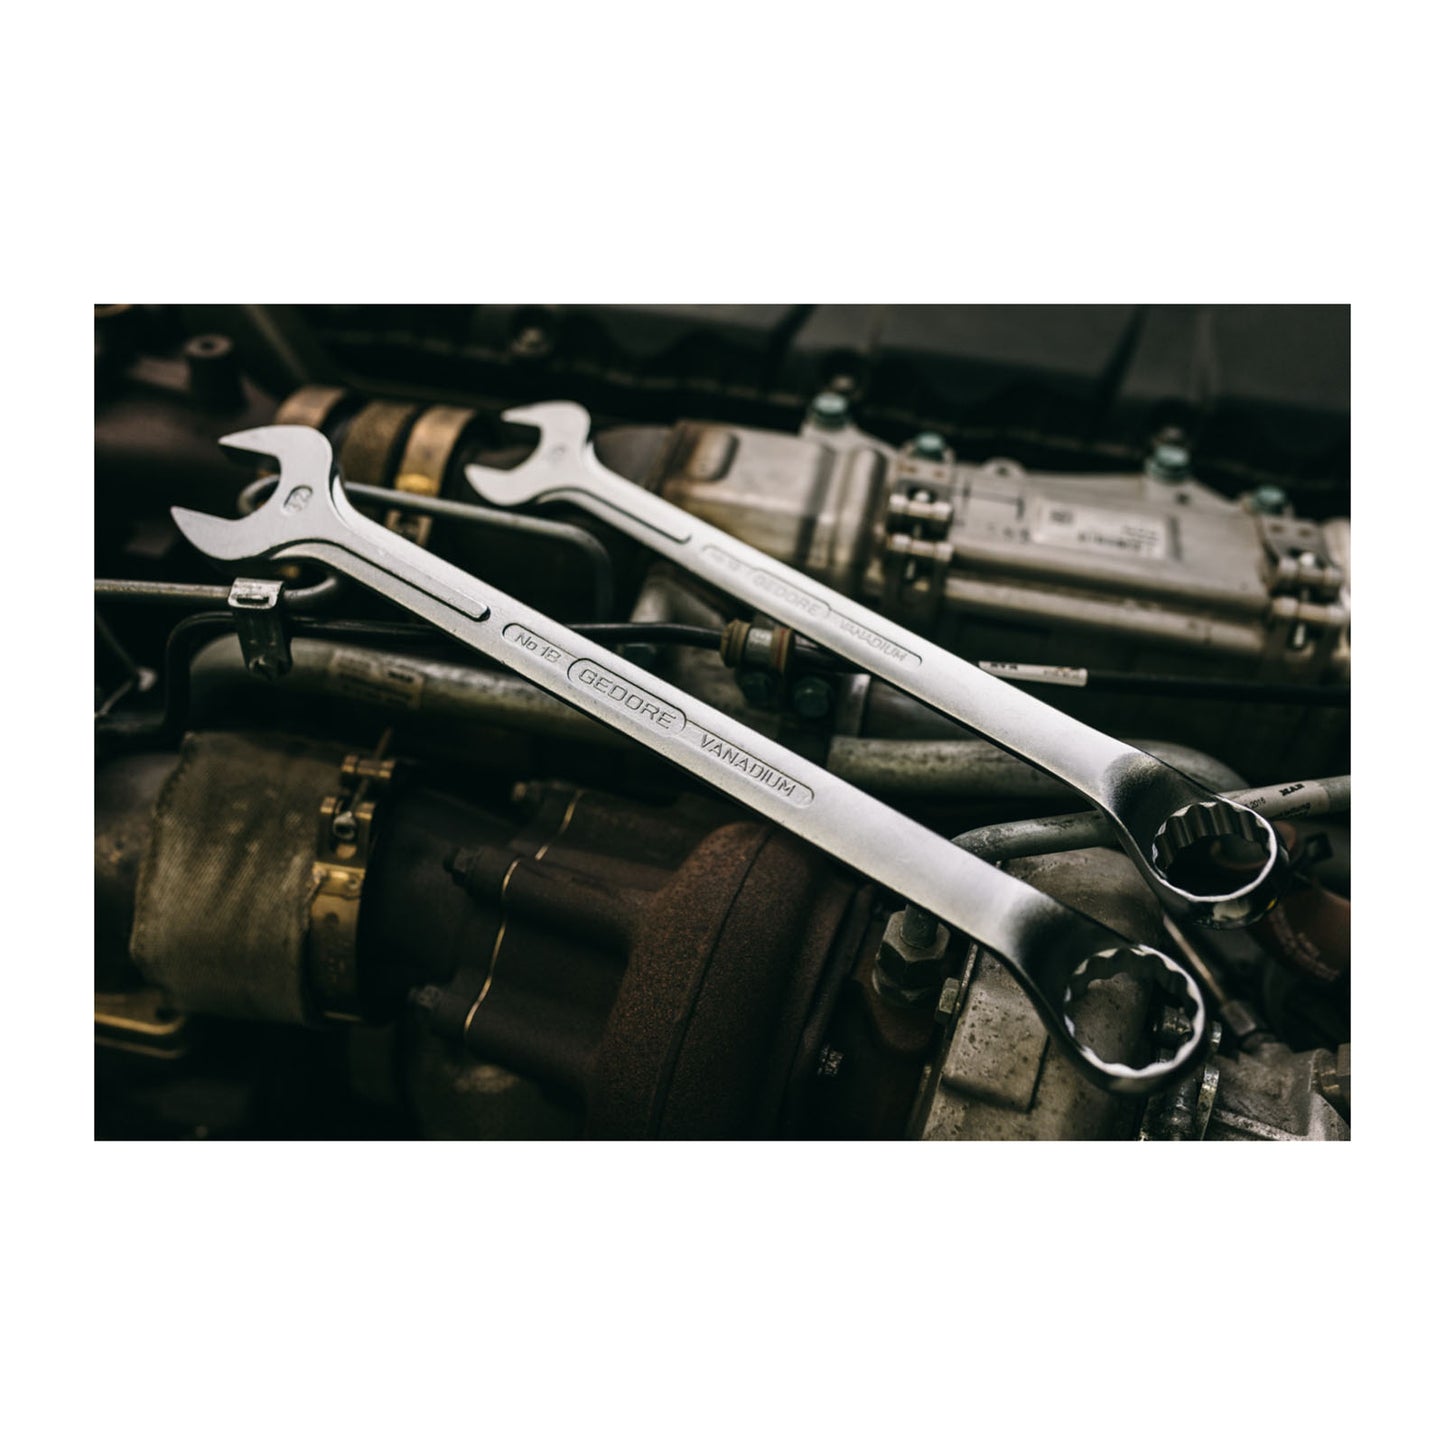 GEDORE 1 B 2.7/16AF - Combination Wrench, 2.7/16AF (6008300)